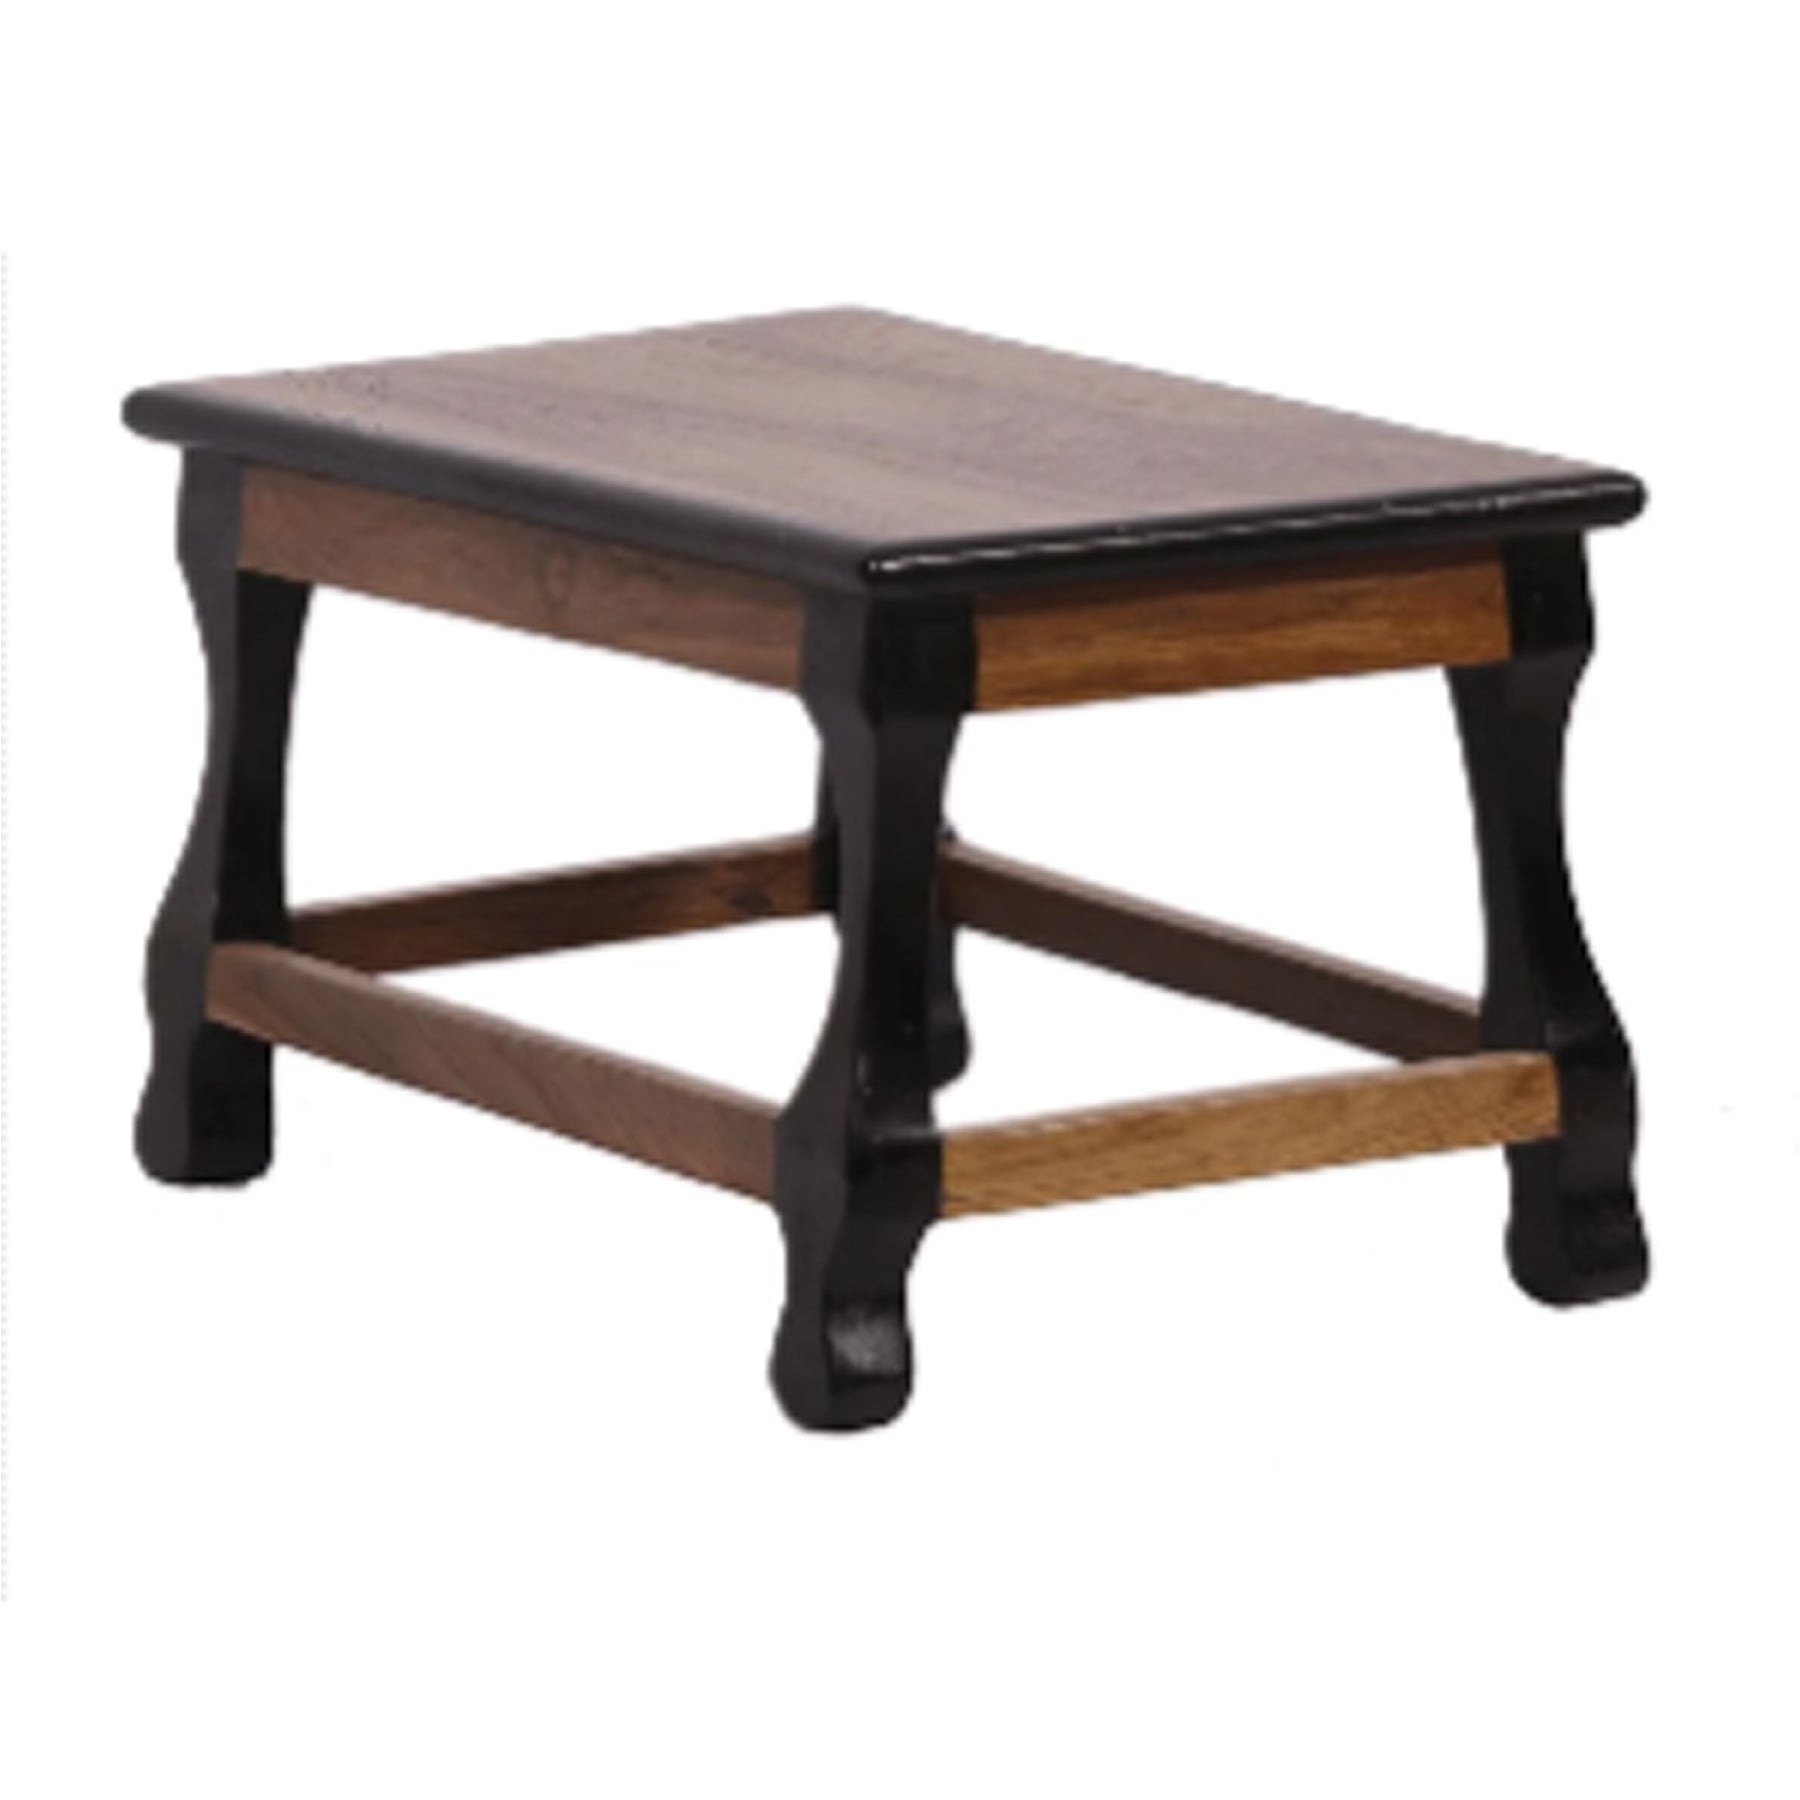 Dual Toned Teak Table ( stool ) Stool